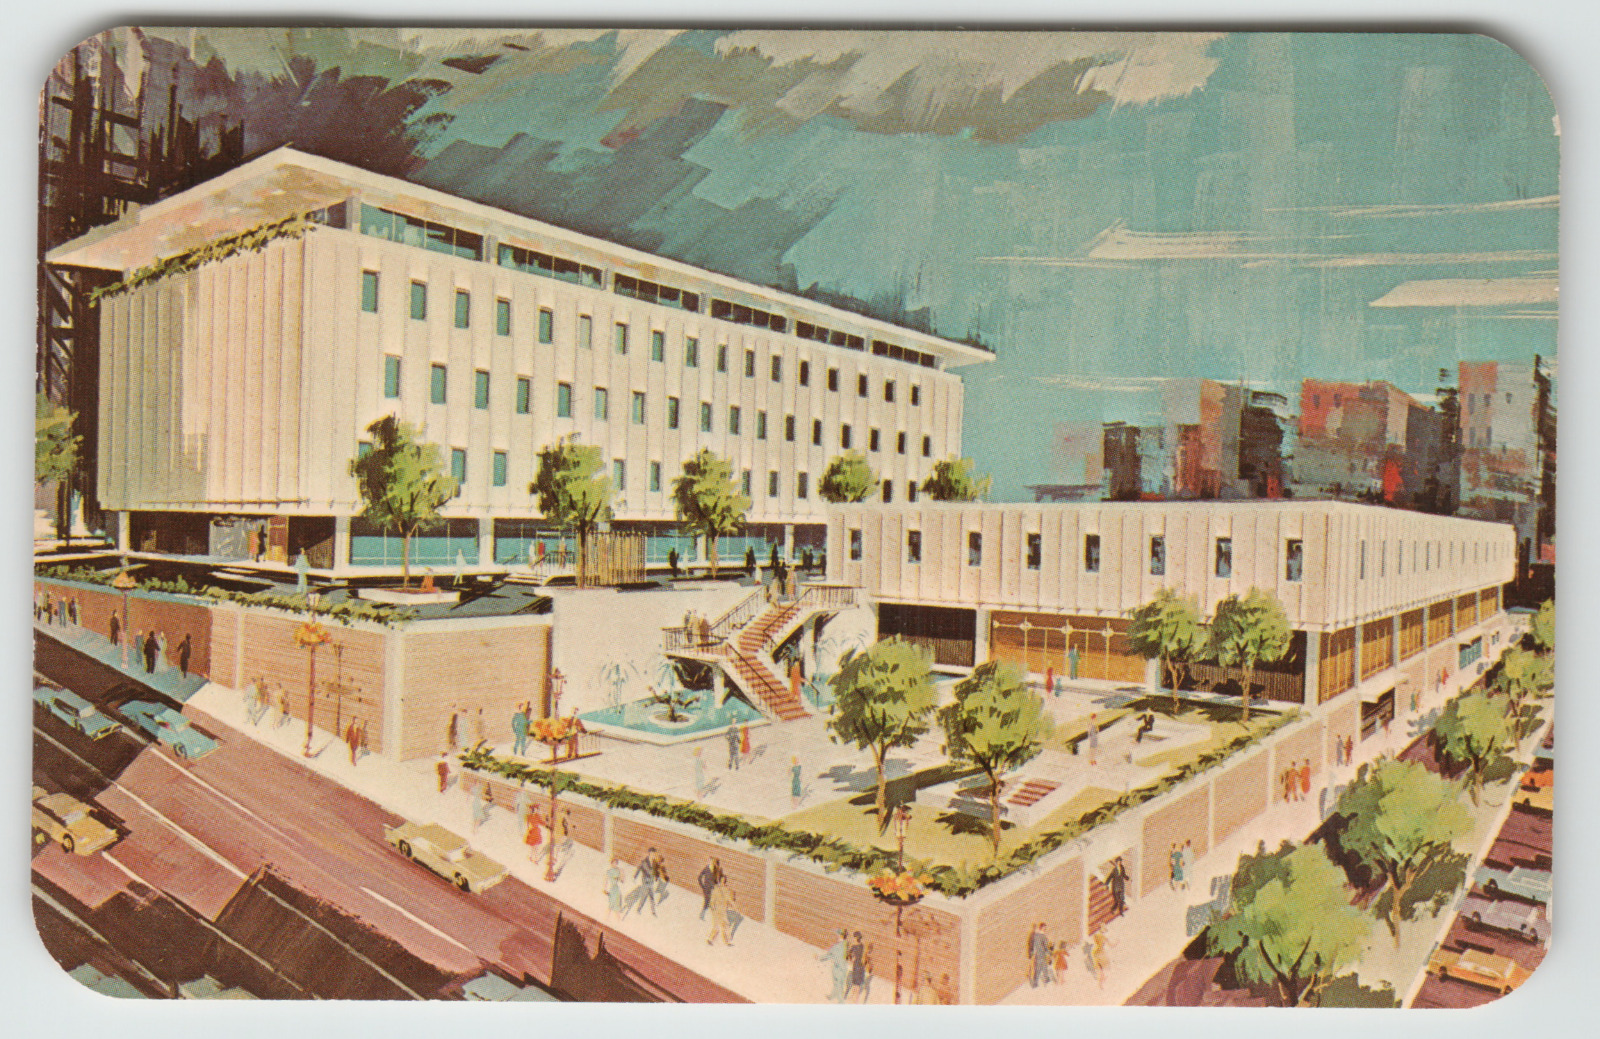 Postcard 1964 Edward Lehman Model of City Hall in Allentown, PA.